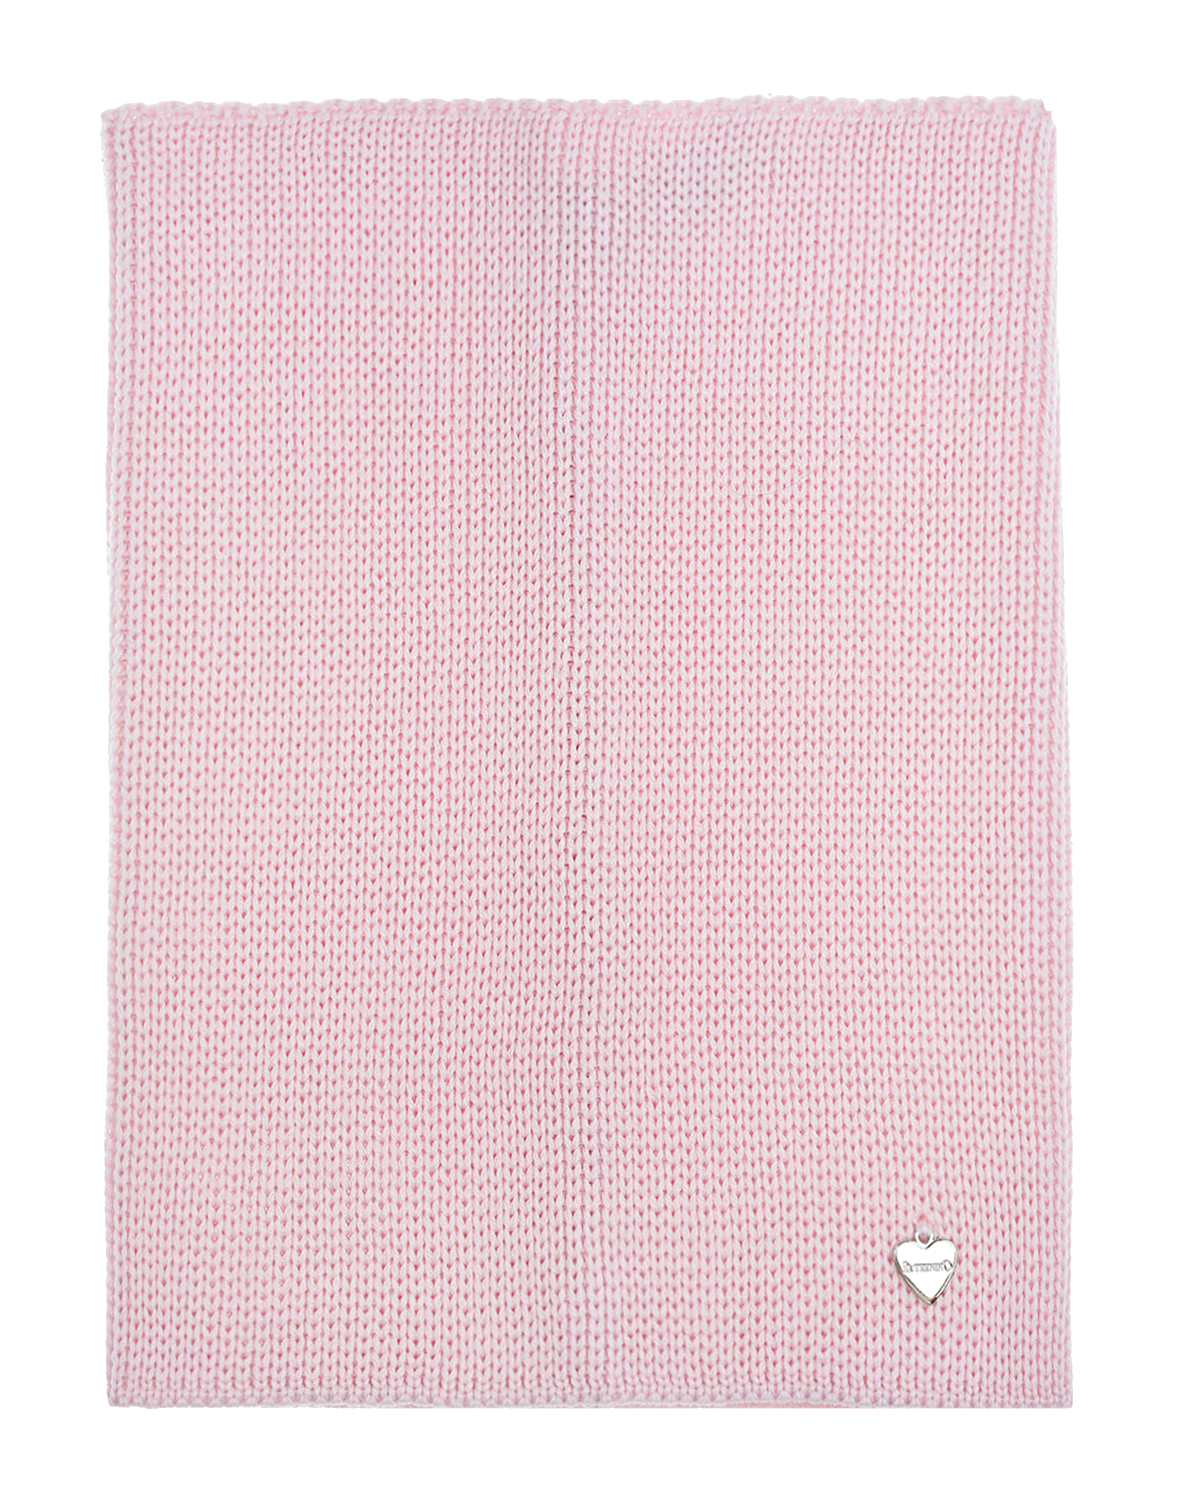 Шерстяной шарф-ворот розового цвета, 24х30 см Il Trenino детский, размер unica - фото 2